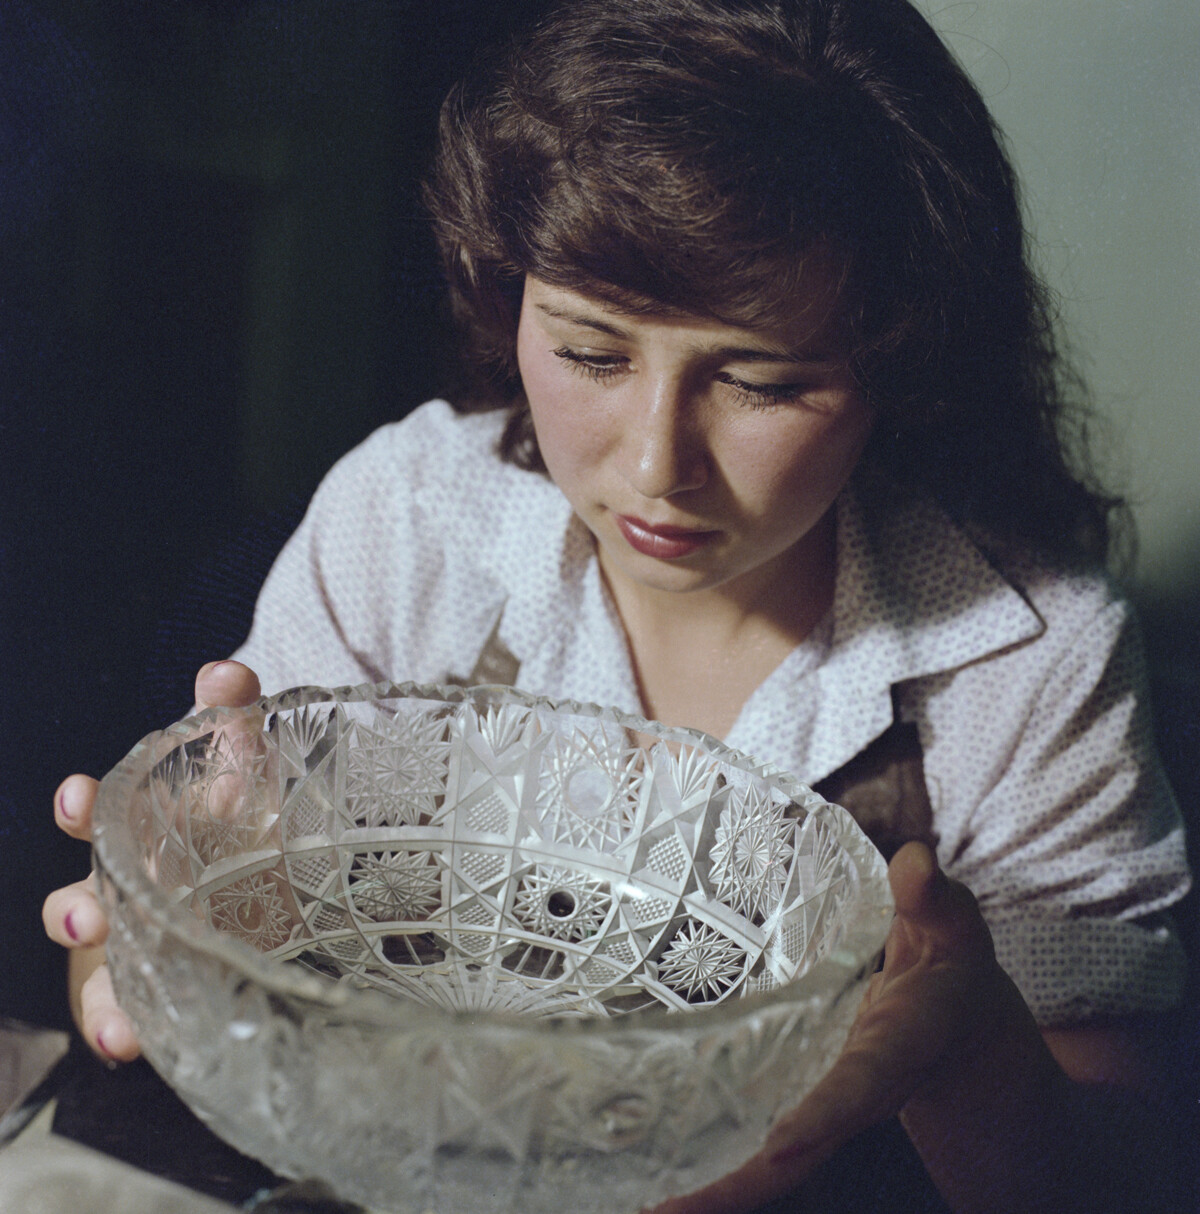 Repubblica del Bashkortostan, 1981. La smerigliatrice di cristallo Tanzilja Bakhtijarova

